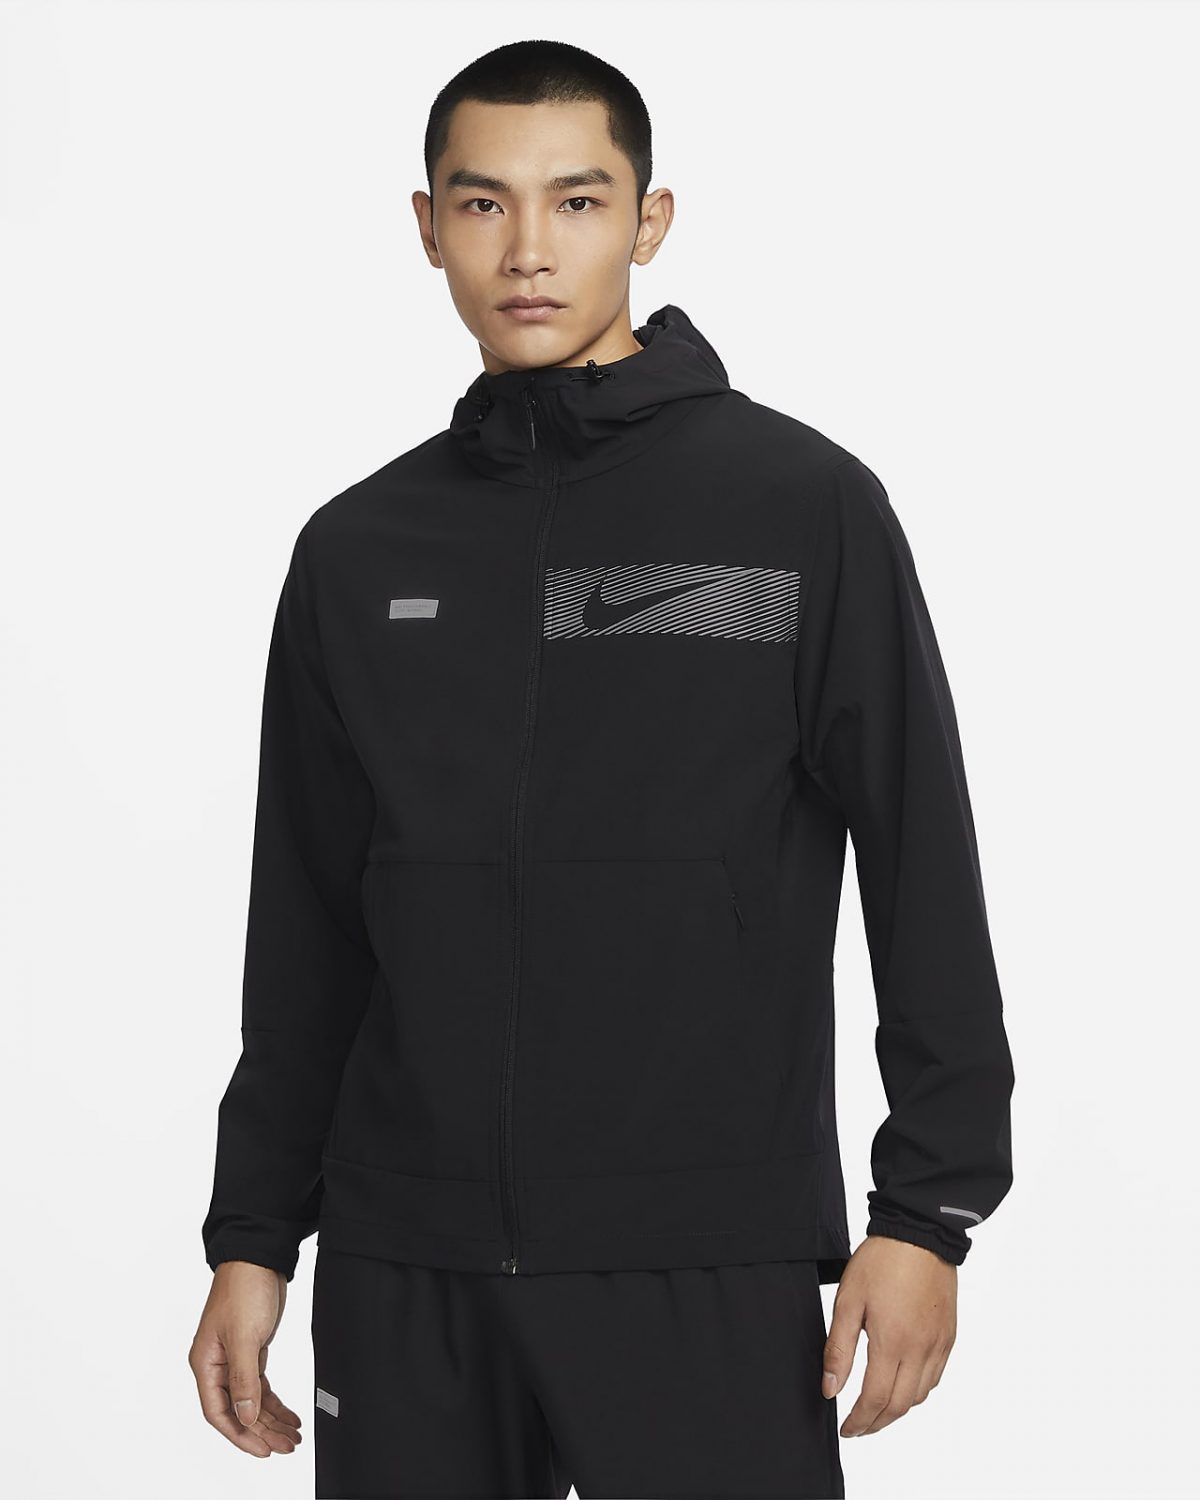 Мужская куртка Nike Unlimited фото